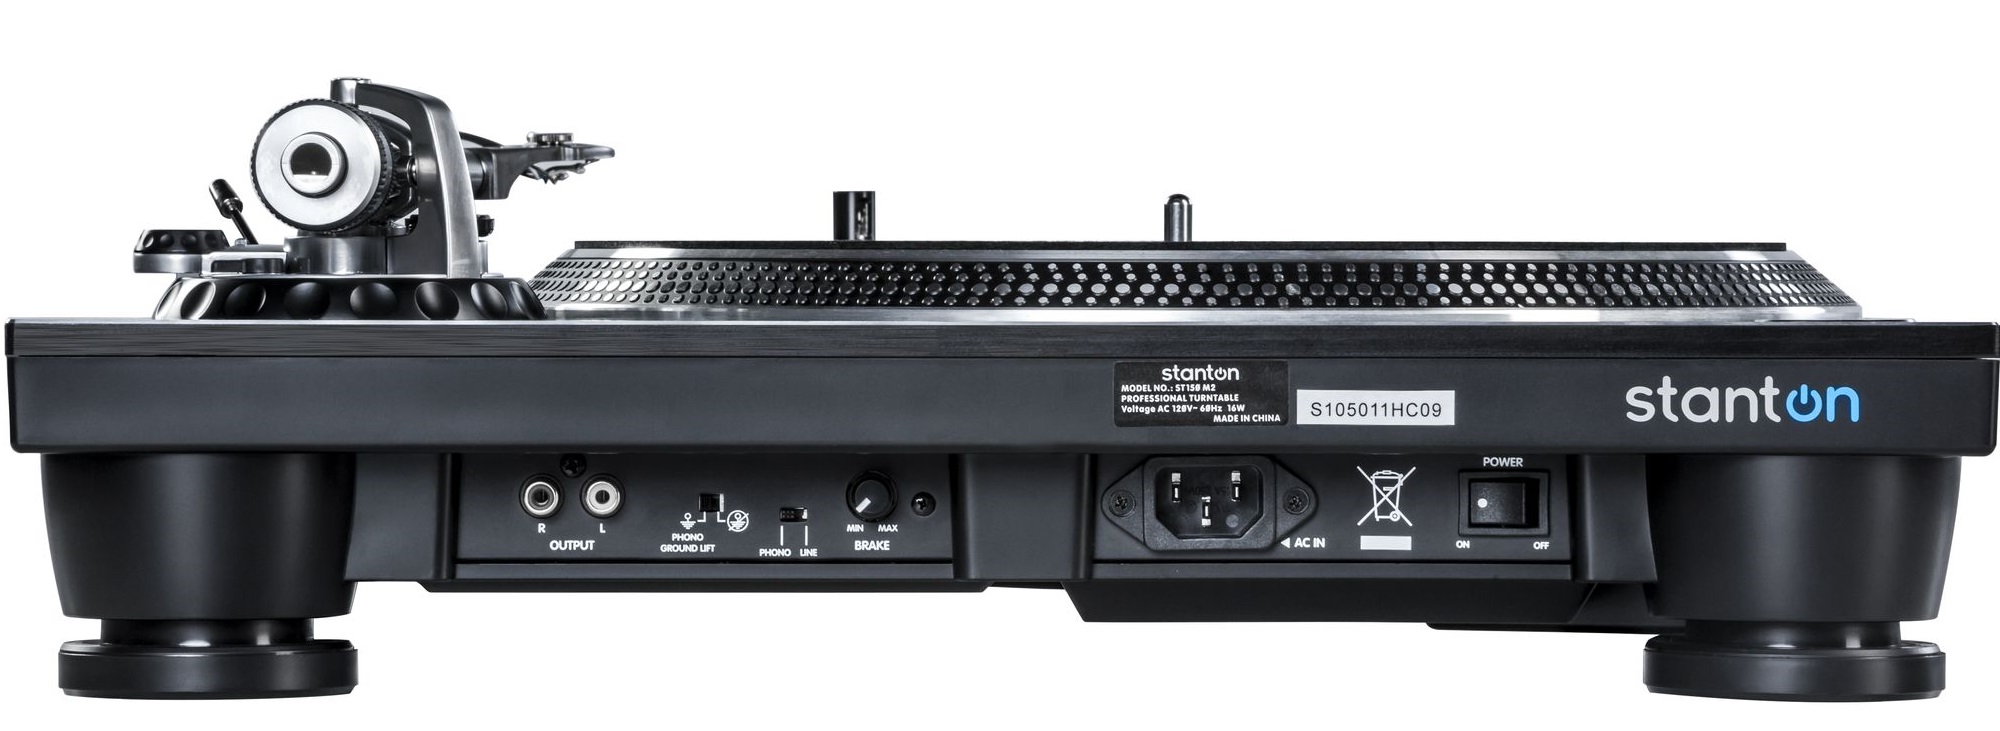 Stanton ST-150 M2 dj turntable πικαπ :: Kosmas Audio Video